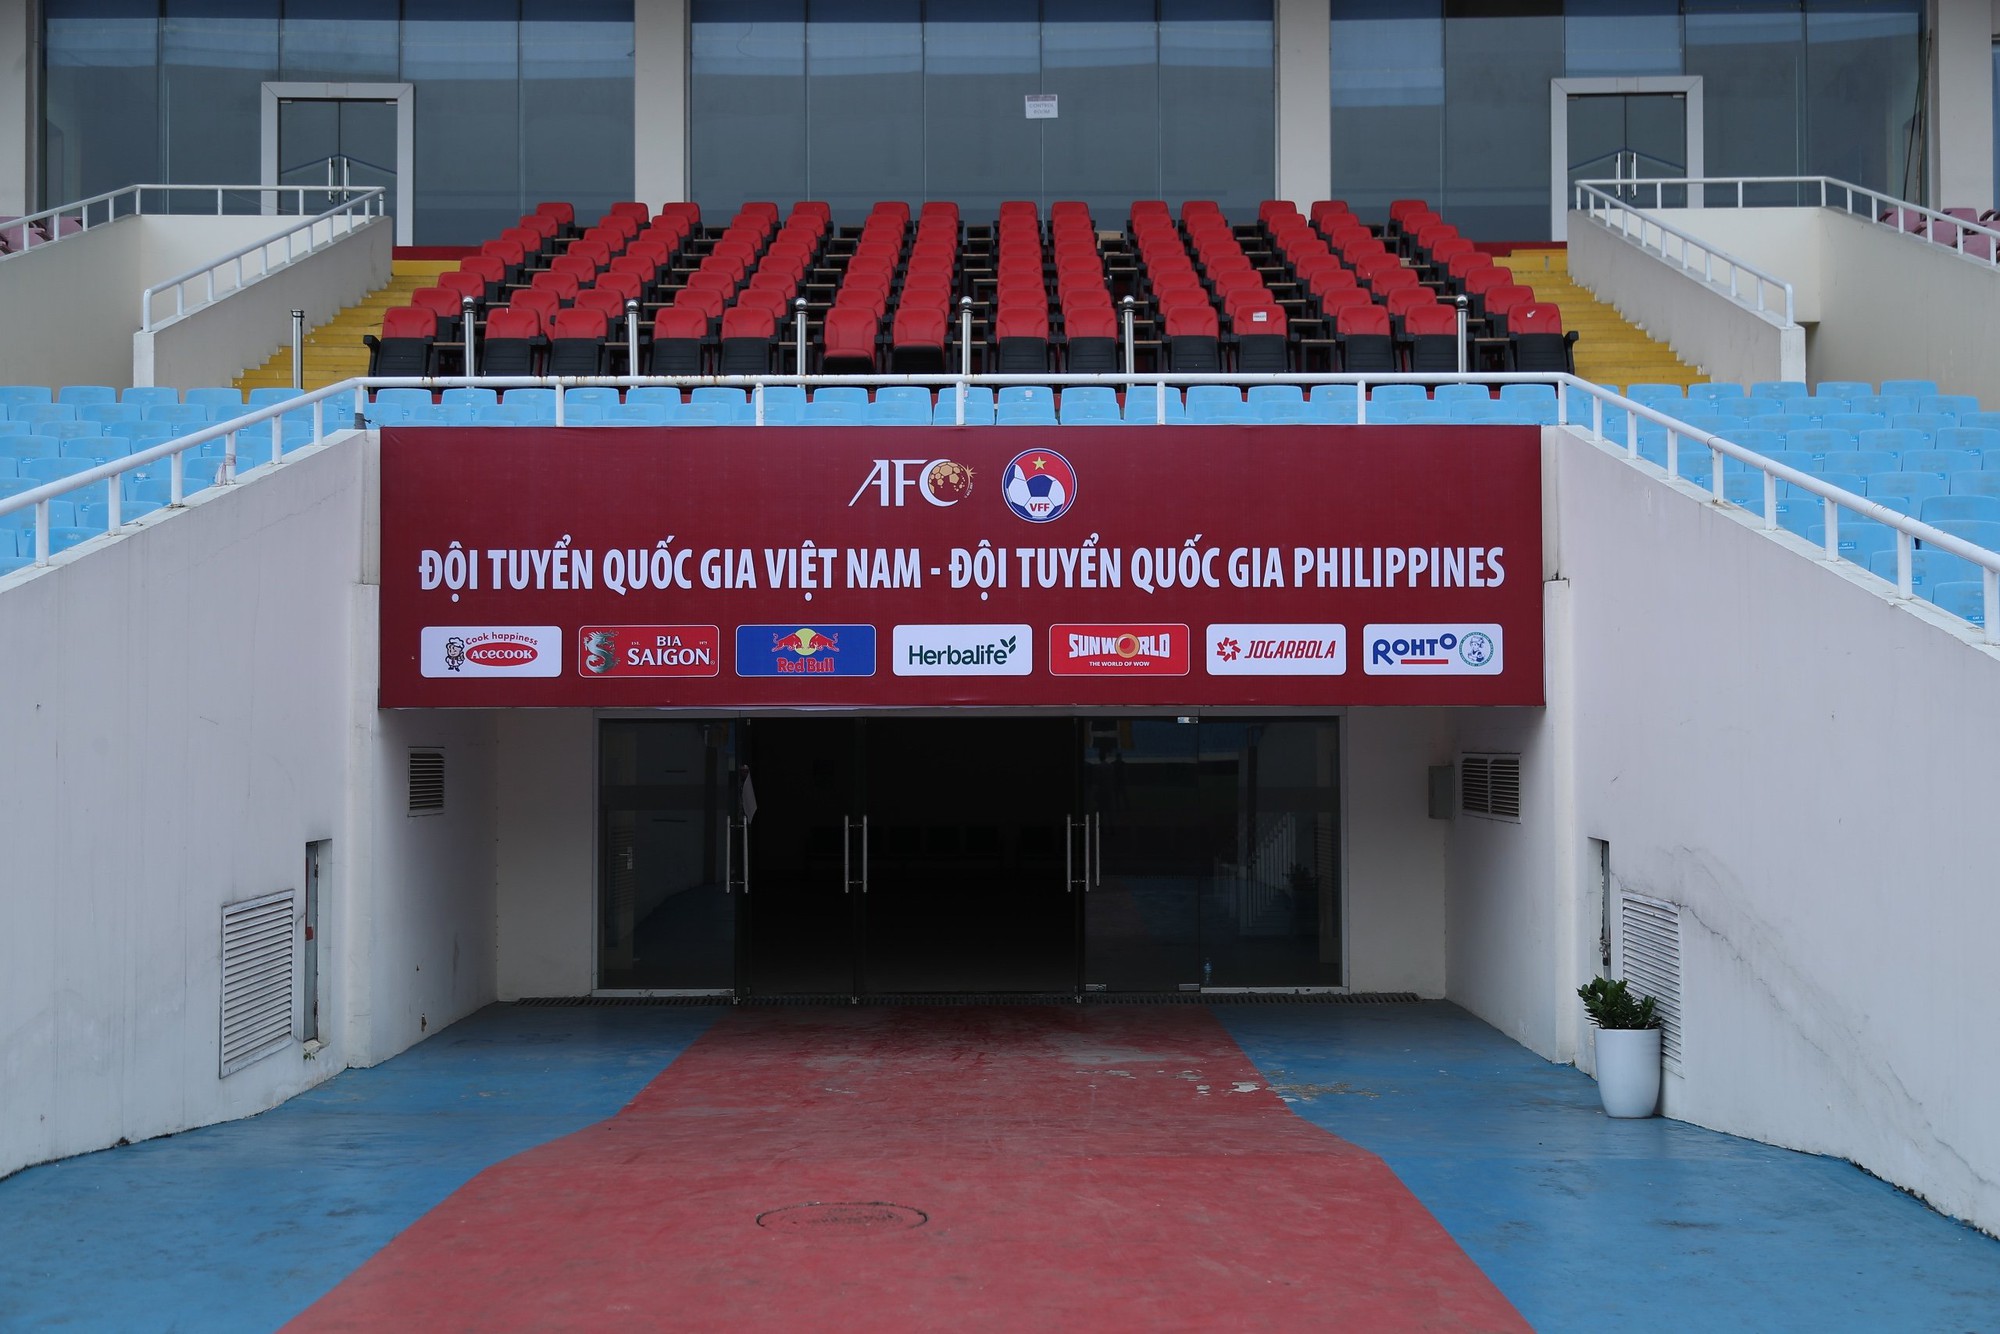 Sân Mỹ Đình "khoác áo mới" trước trận đấu của ĐT Việt Nam- Ảnh 1.